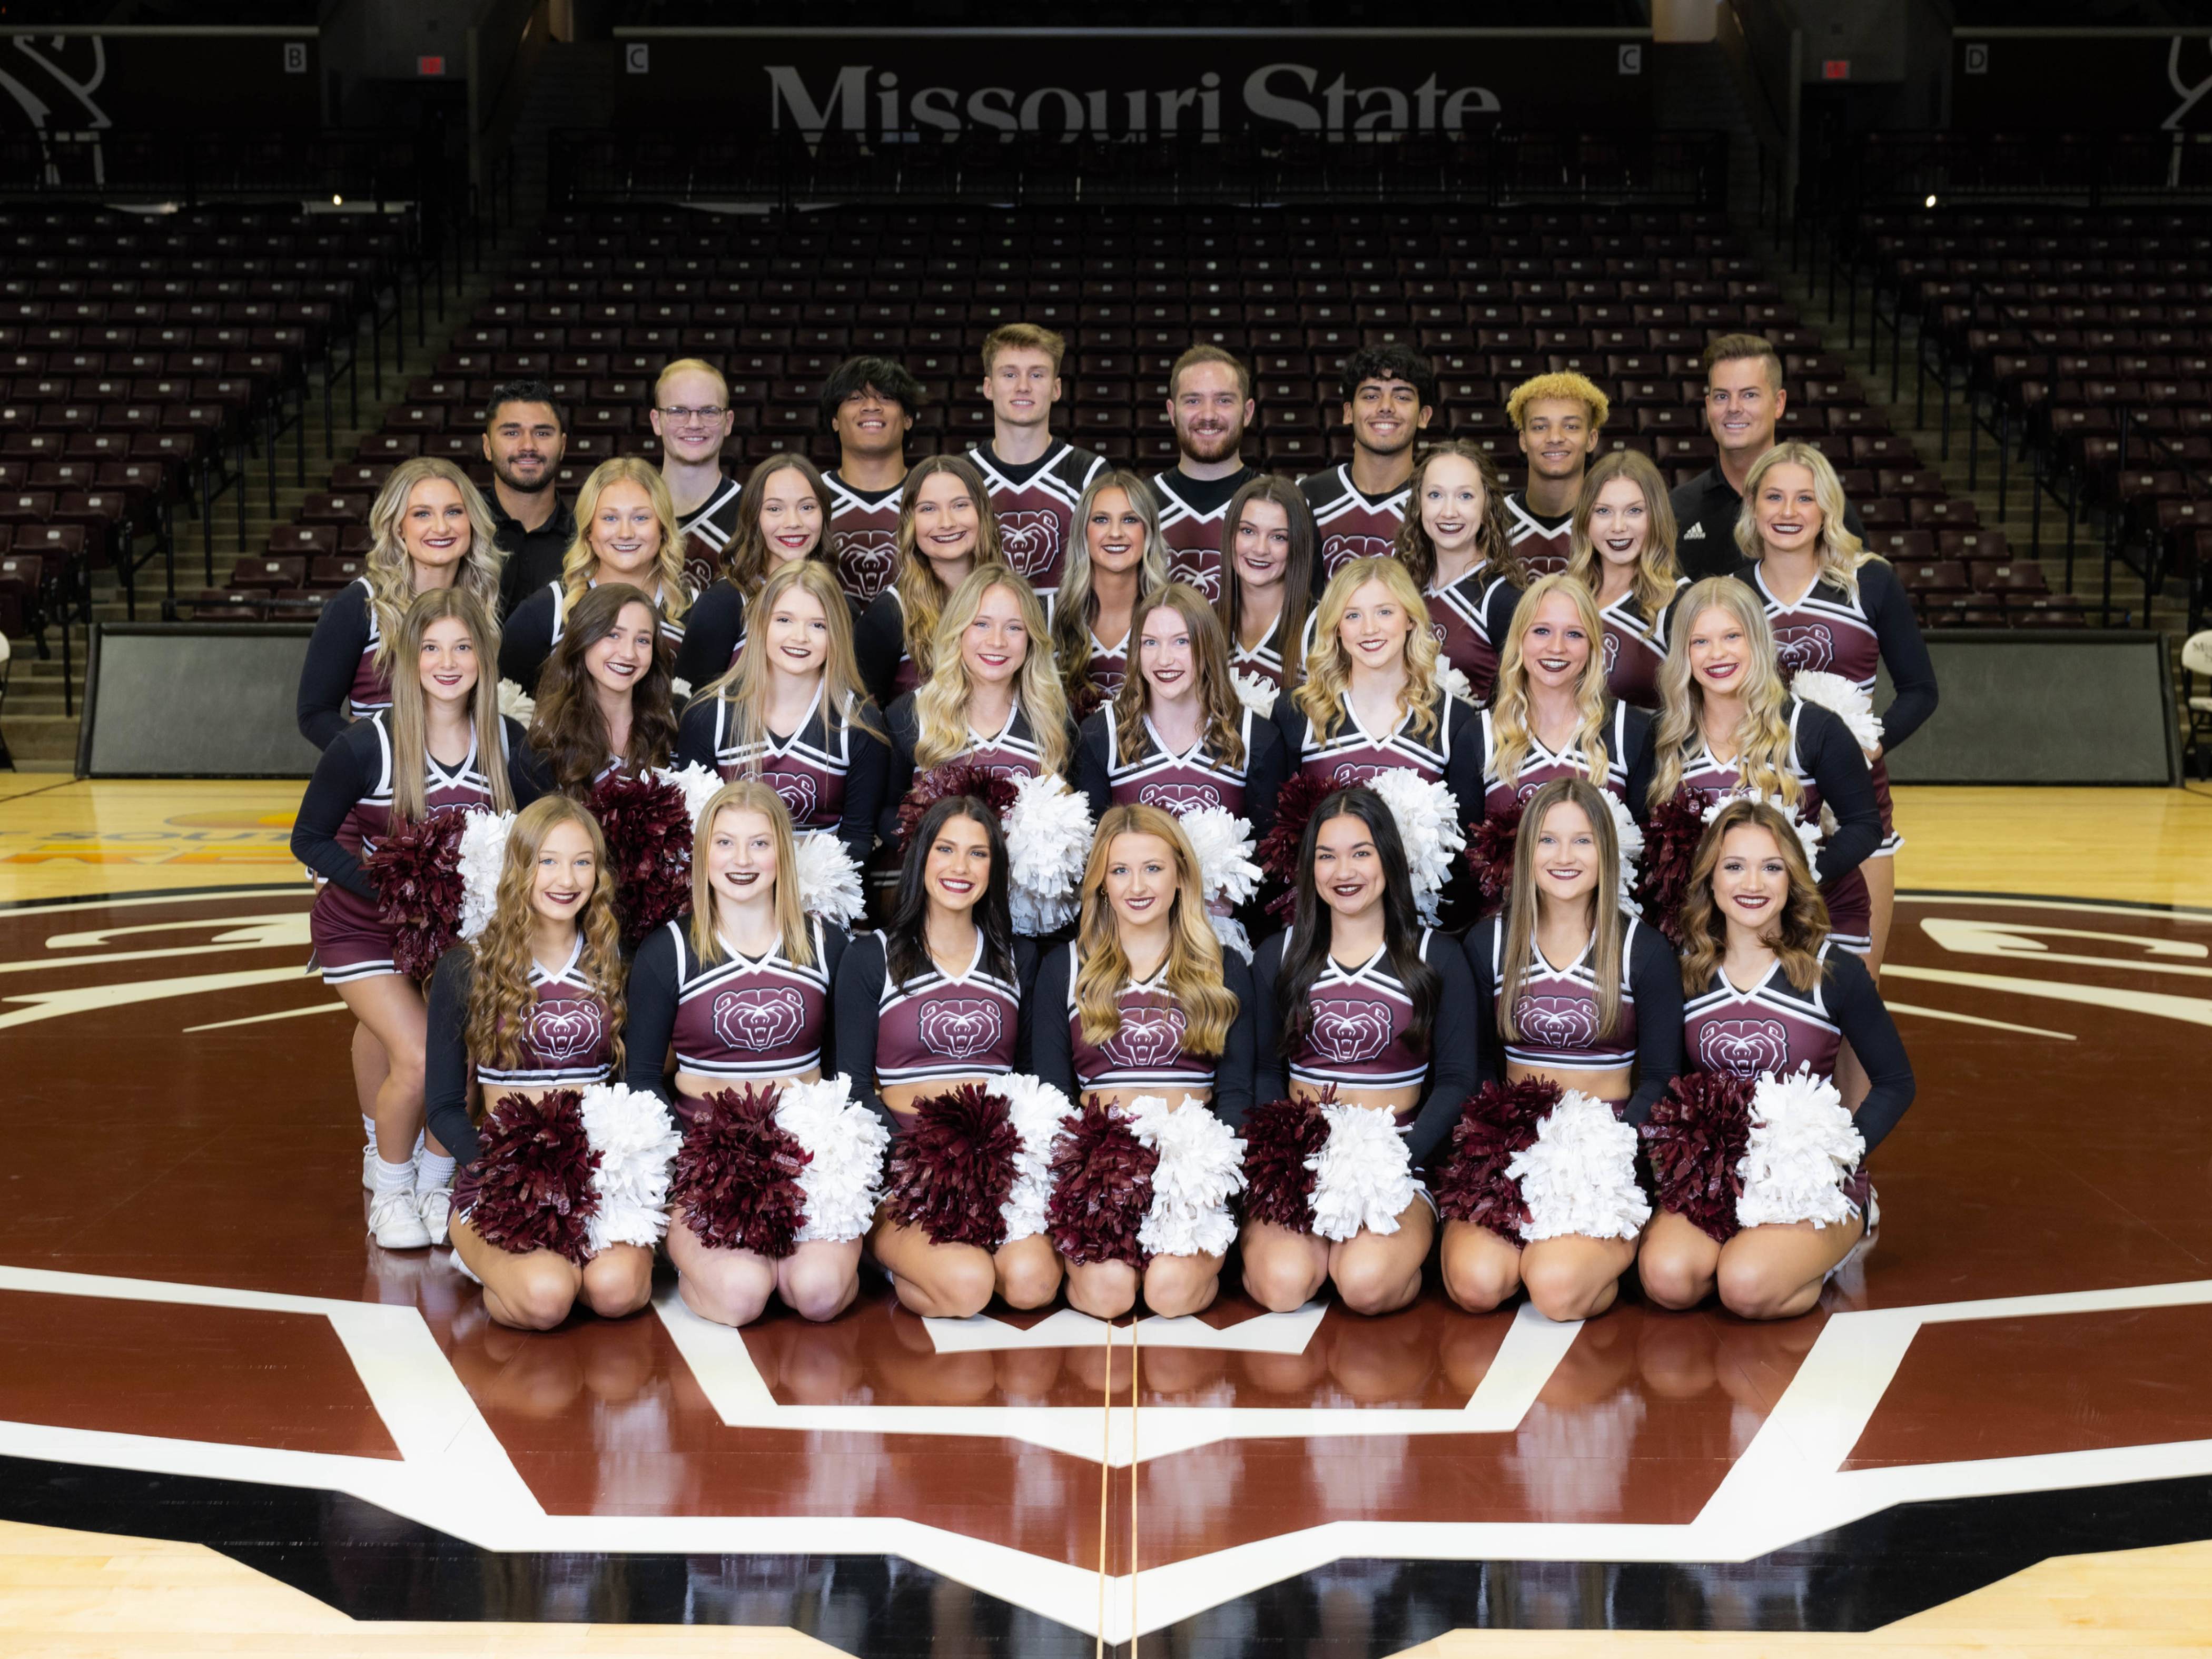 2022-2023 Missouri State Cheerleading